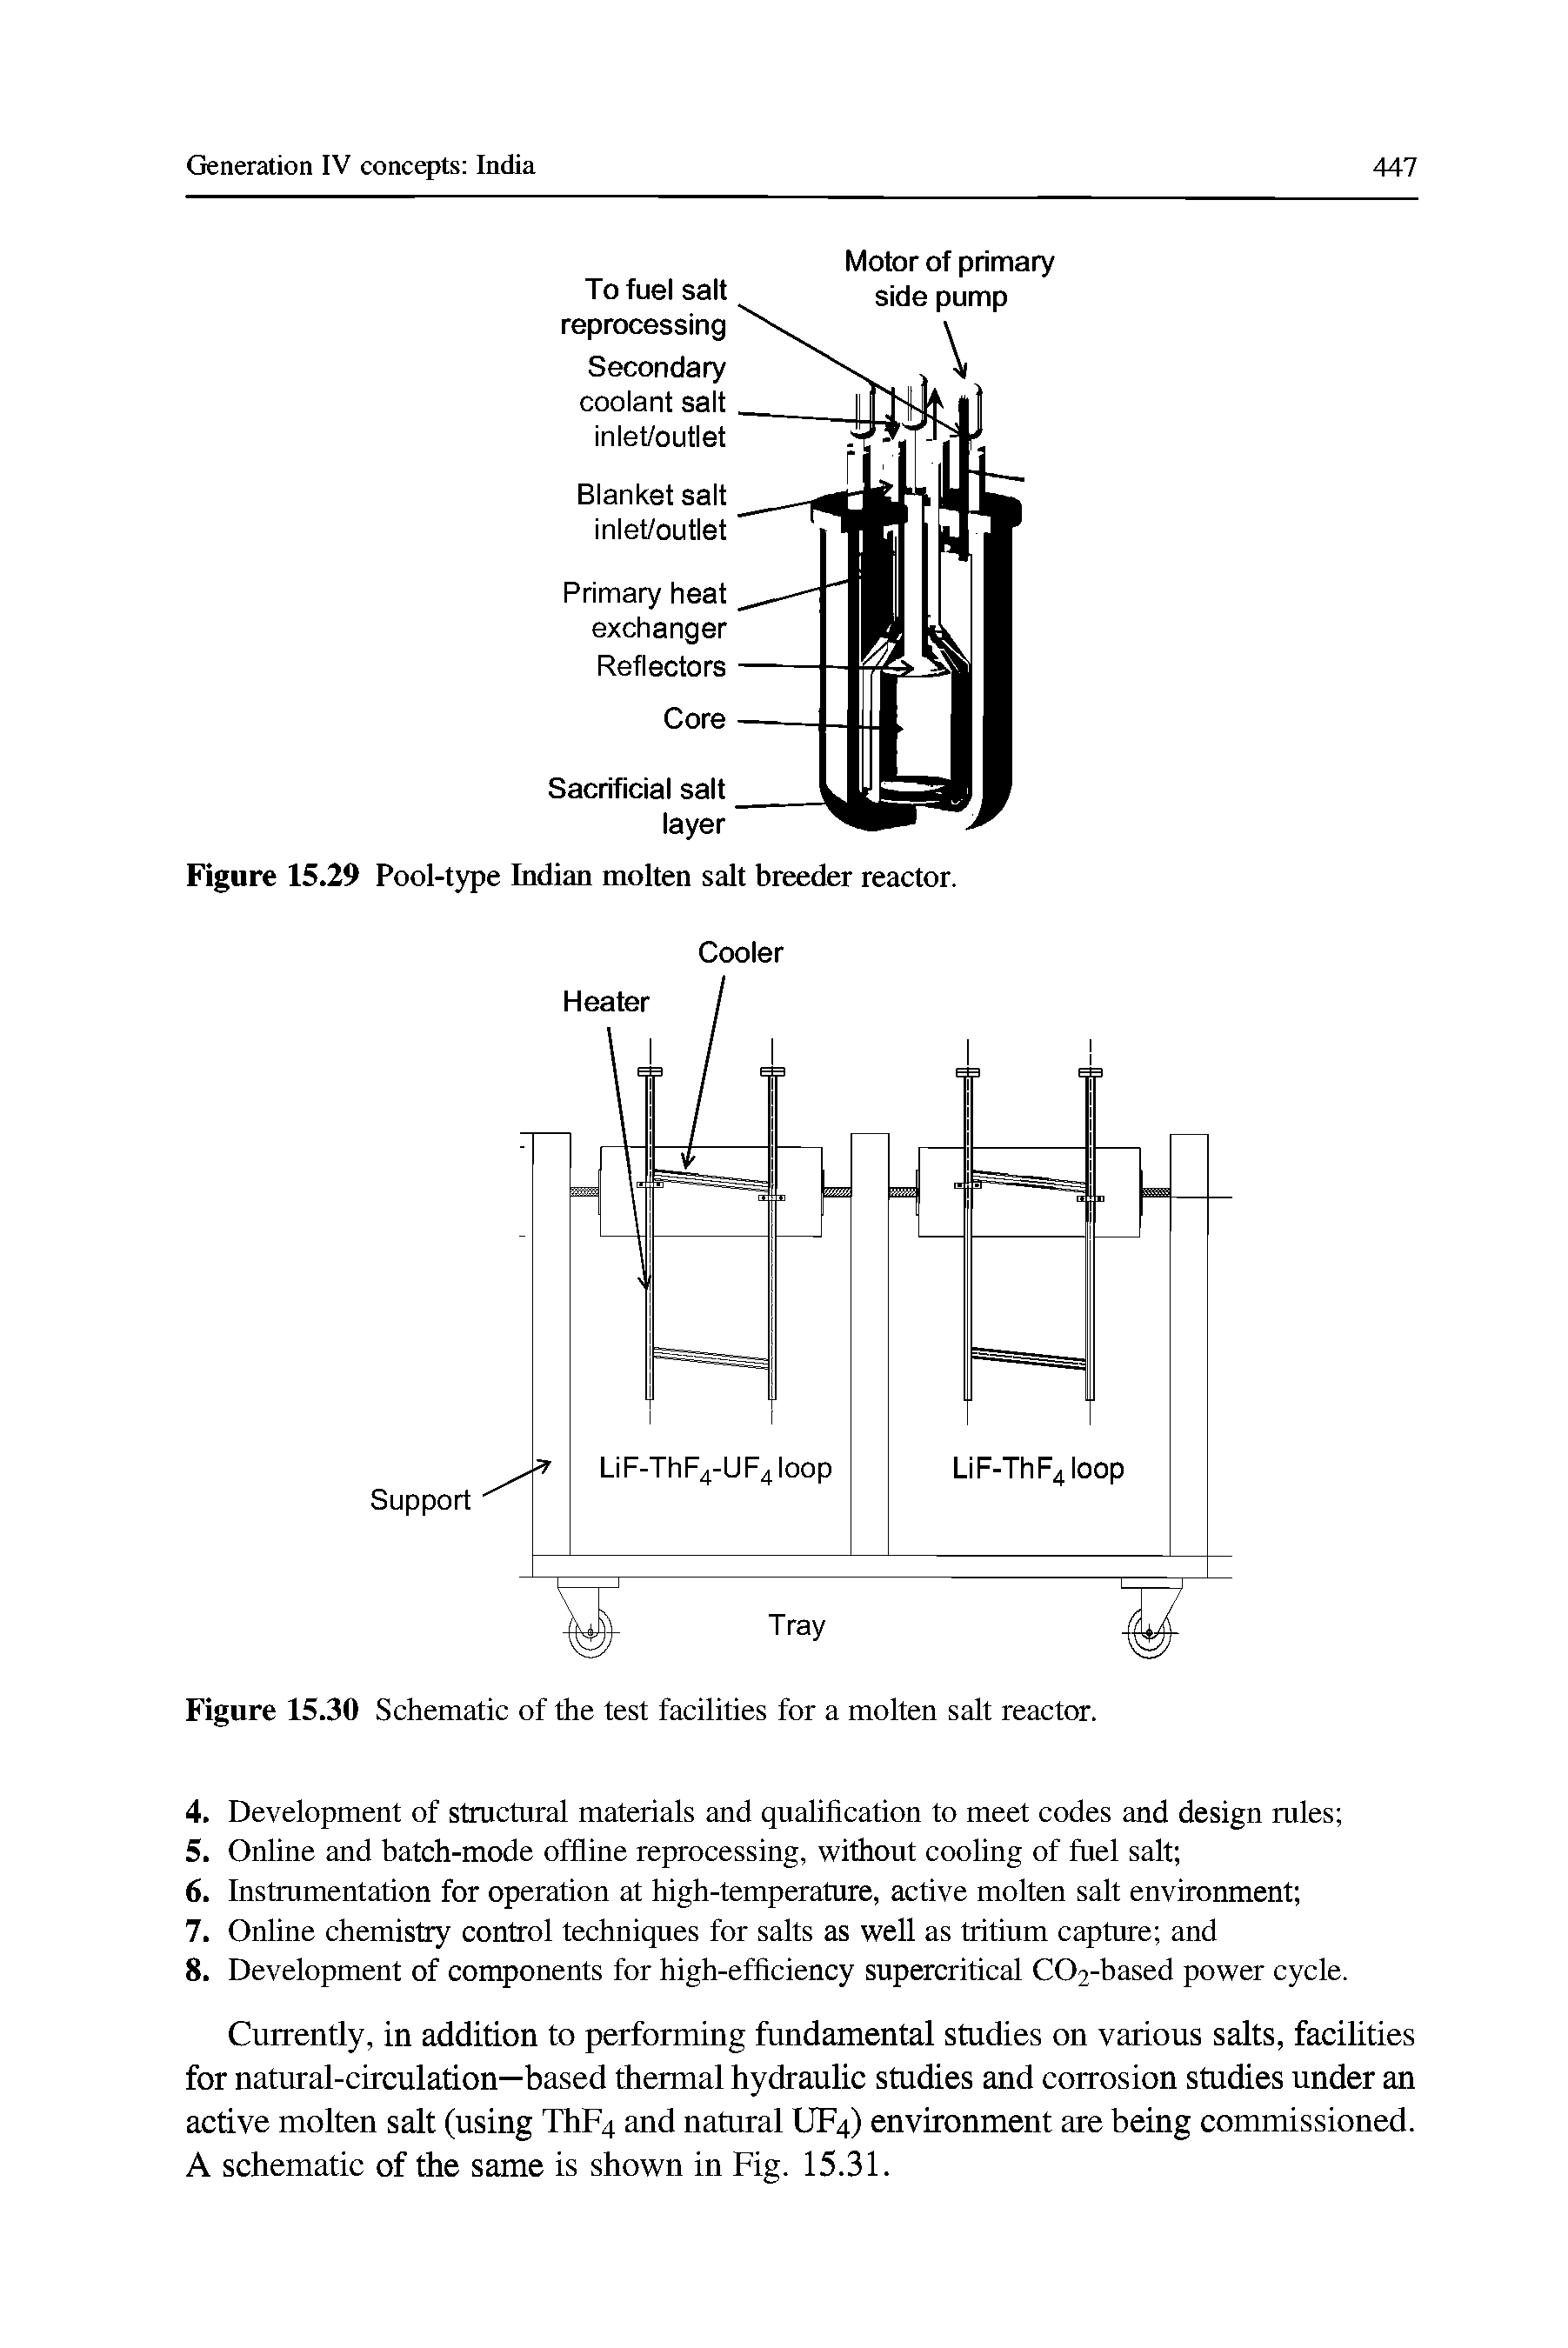 Figure 15.29 Pool-type Indian molten salt breeder reactor.